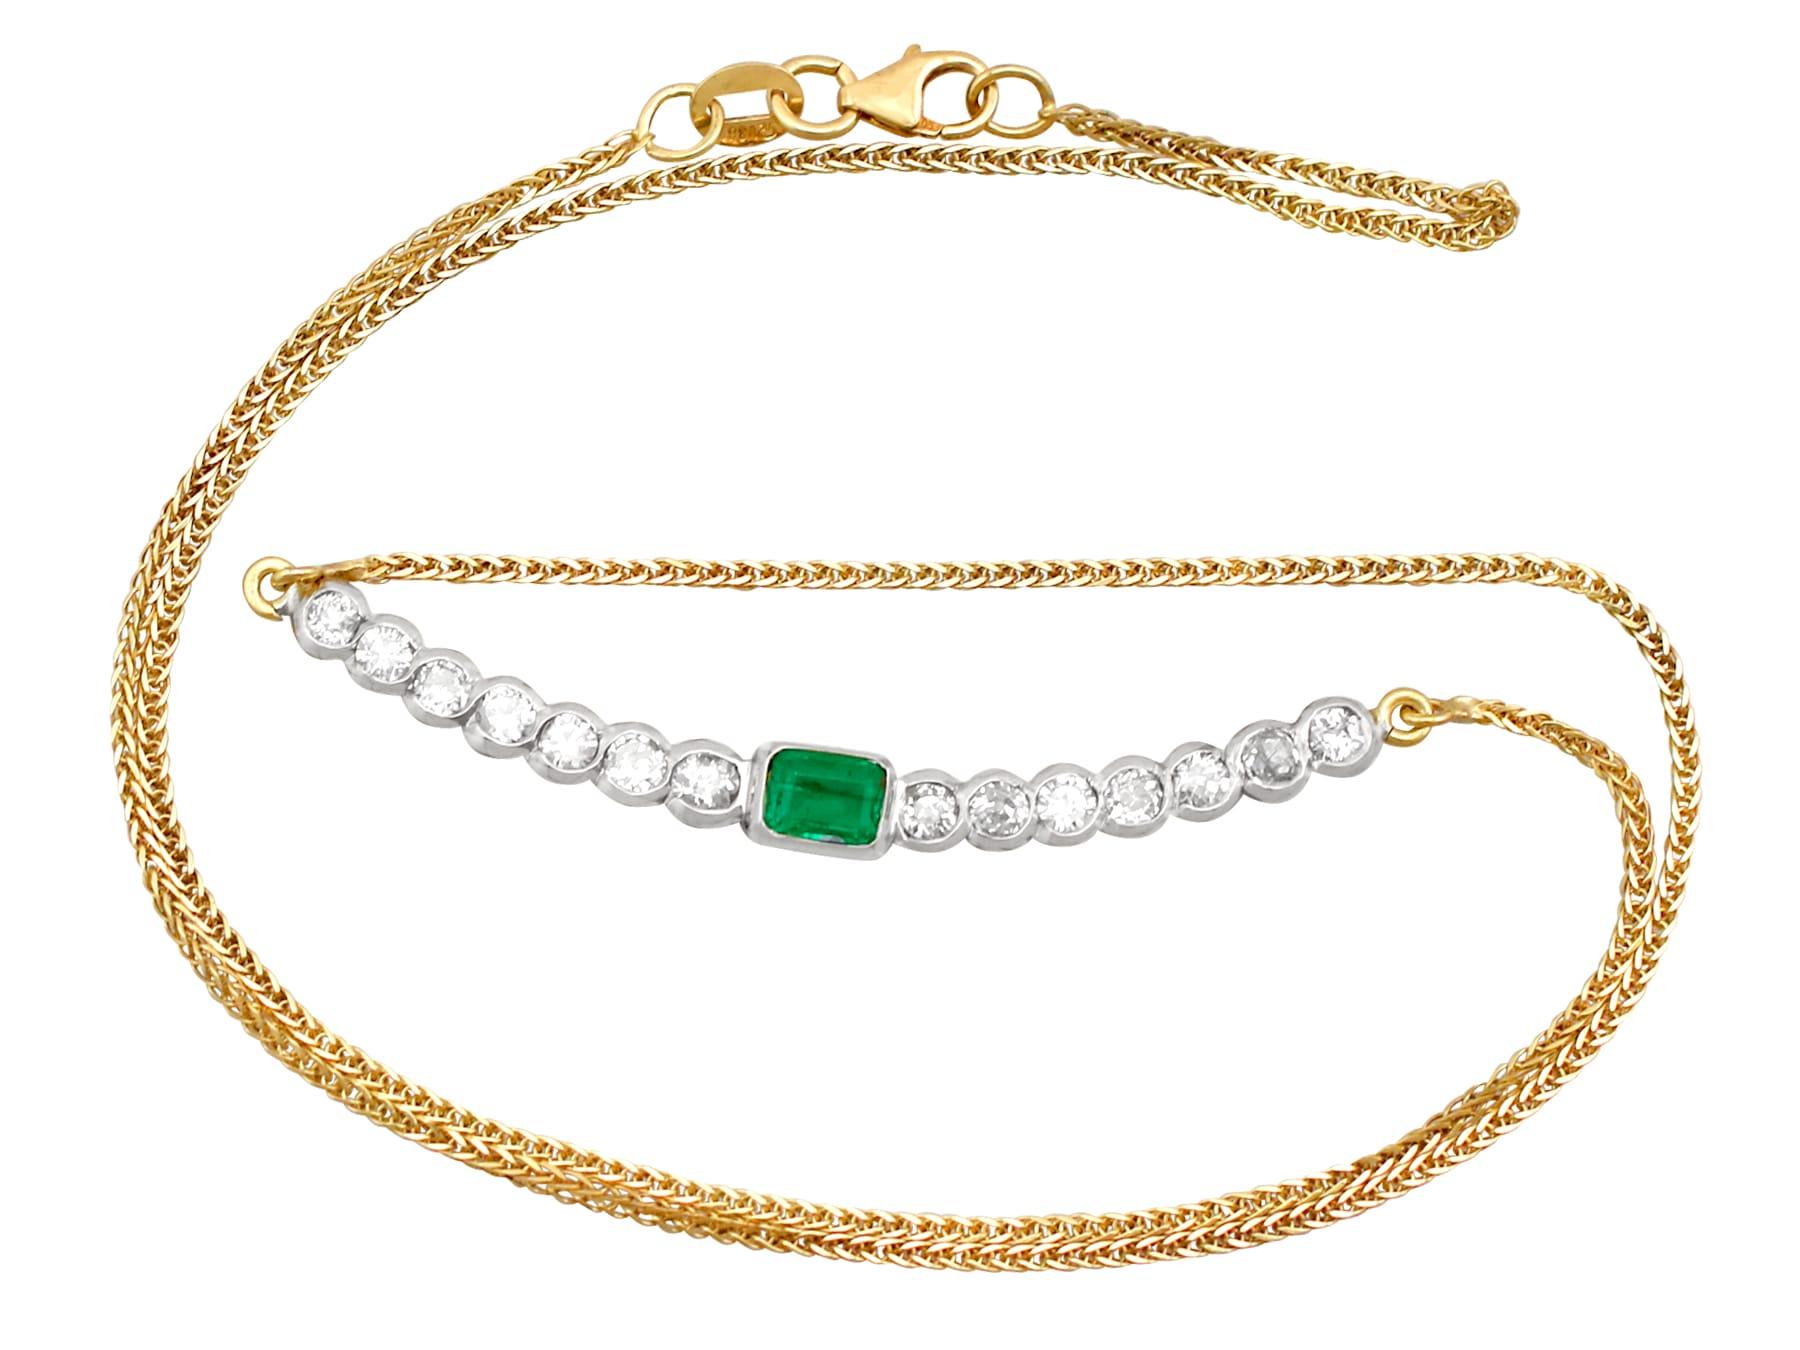 Eine beeindruckende Vintage-Halskette aus 18 Karat Weiß- und Gelbgold mit einem Smaragd von 0,44 Karat und einem Diamanten von 1,54 Karat; Teil unserer vielfältigen Edelsteinschmuckkollektionen.

Diese feine und beeindruckende Vintage-Halskette mit